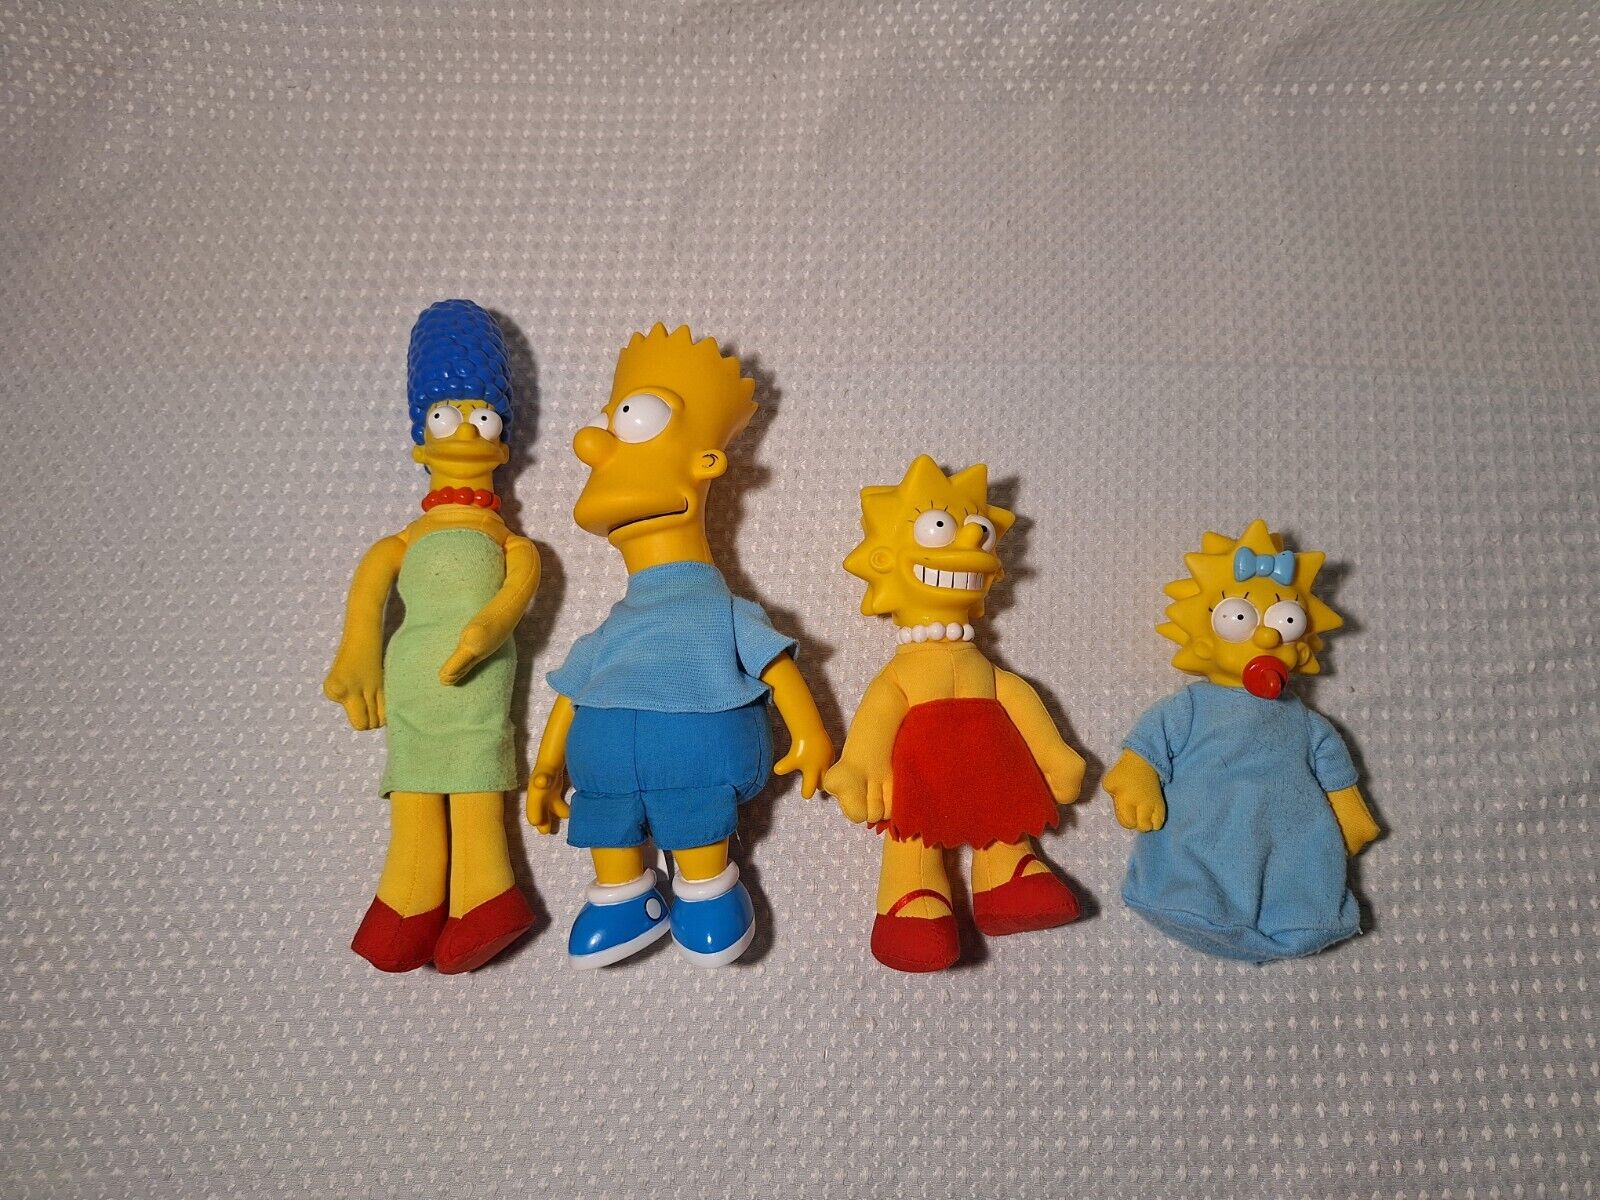 Vintage 1990 Simpsons Marge Bart Lisa Magie Plush Stuffed Figures Lot of 4